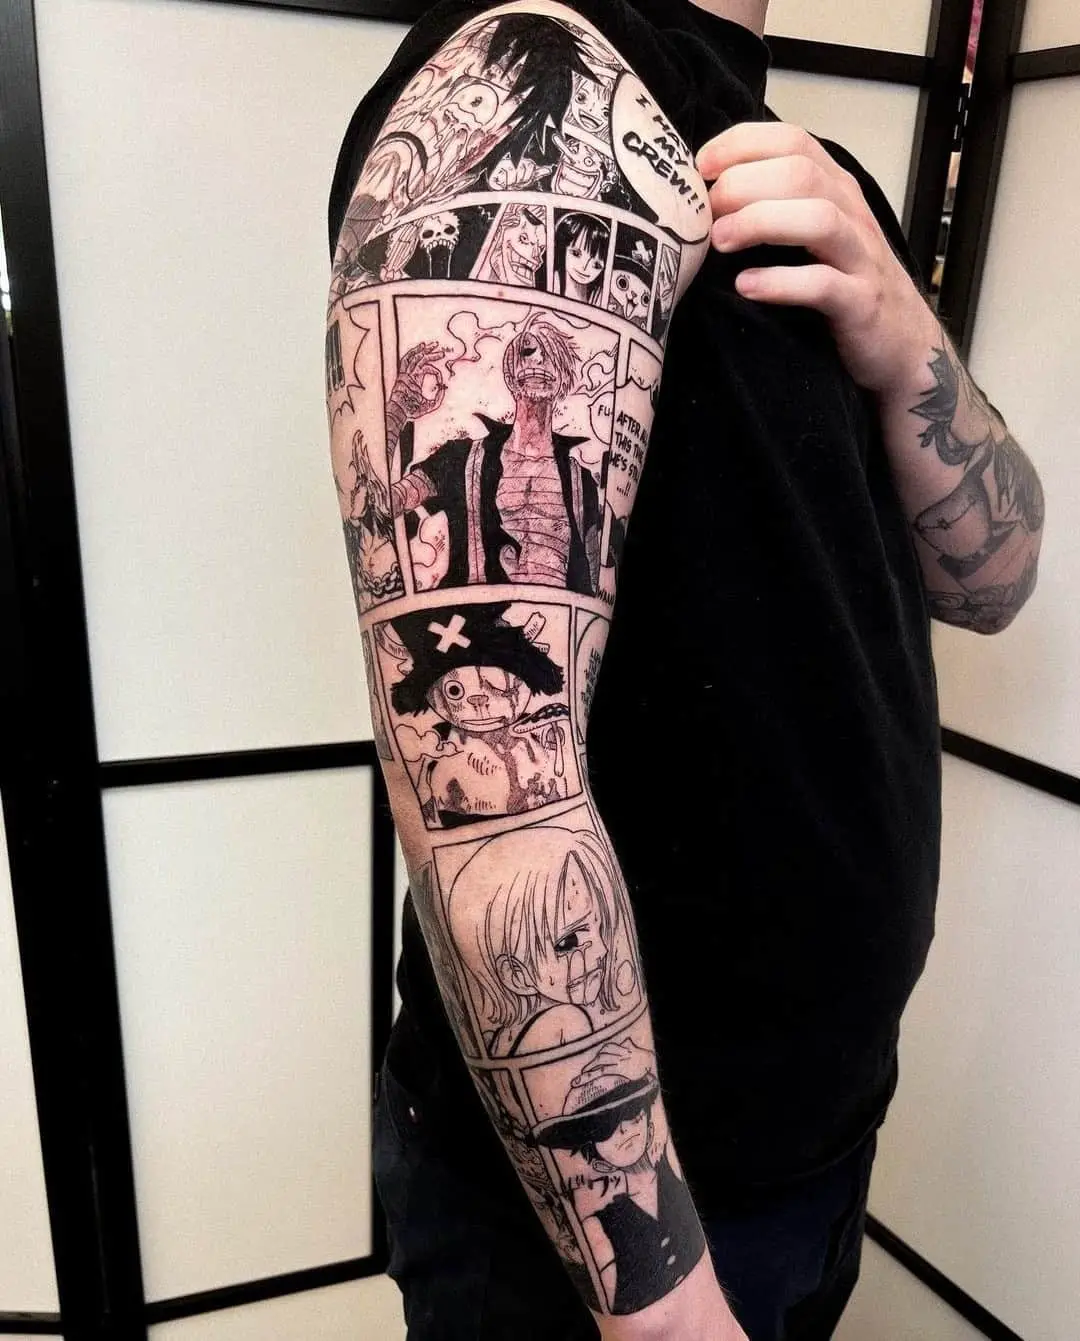 Wonderful full arm tattoo